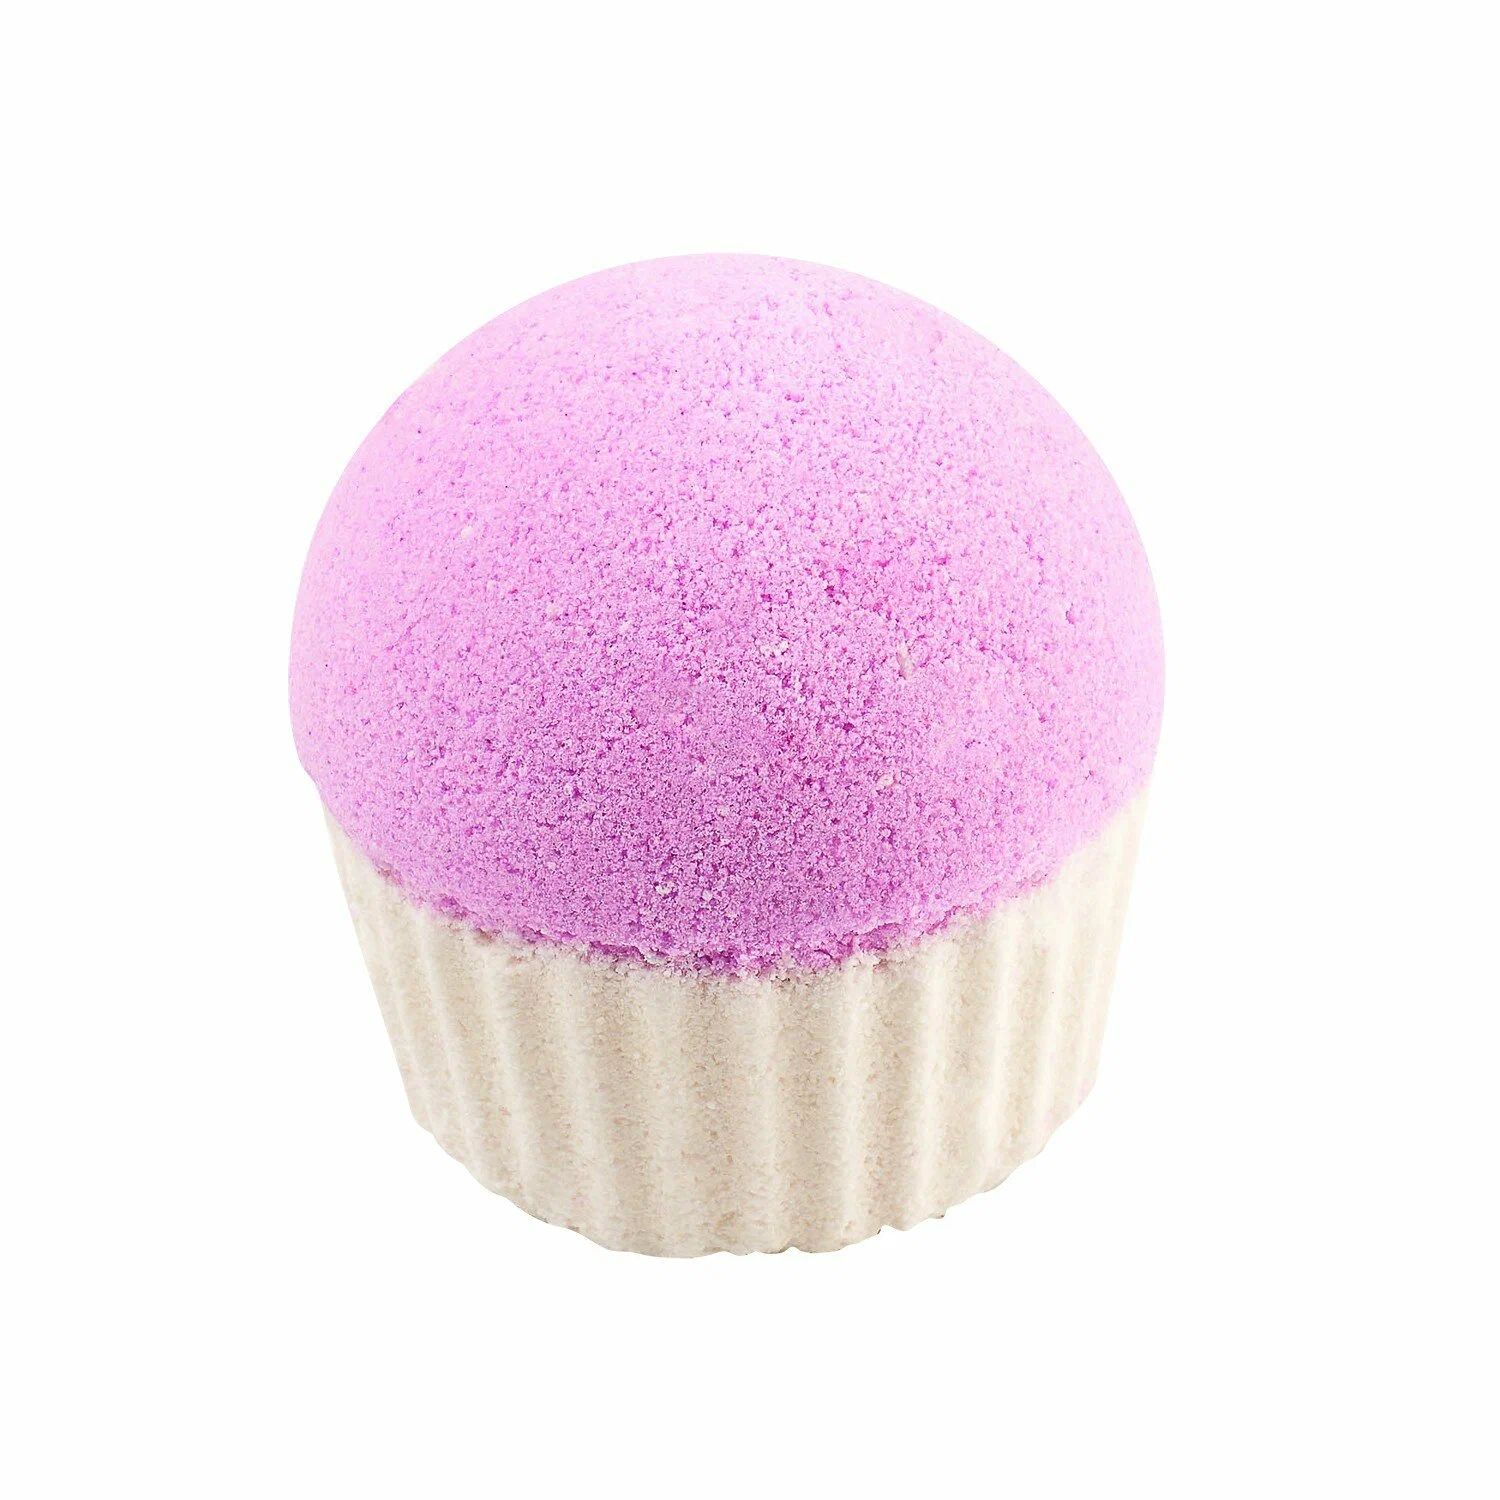 Гейзер для ванны Cafe mimi Клубничный капкейк, розовый, 140 г café mimi гейзер для ванны персиковый пончик с киви 140 0